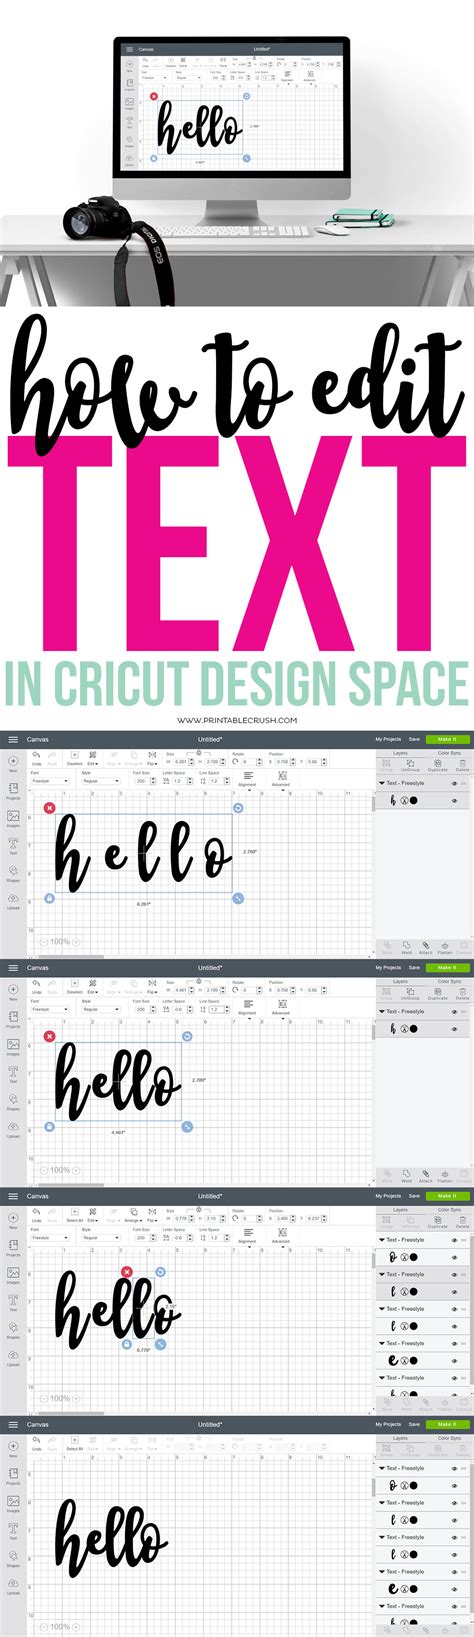 guide  cricut design space cricut cricut tutorials cricut design